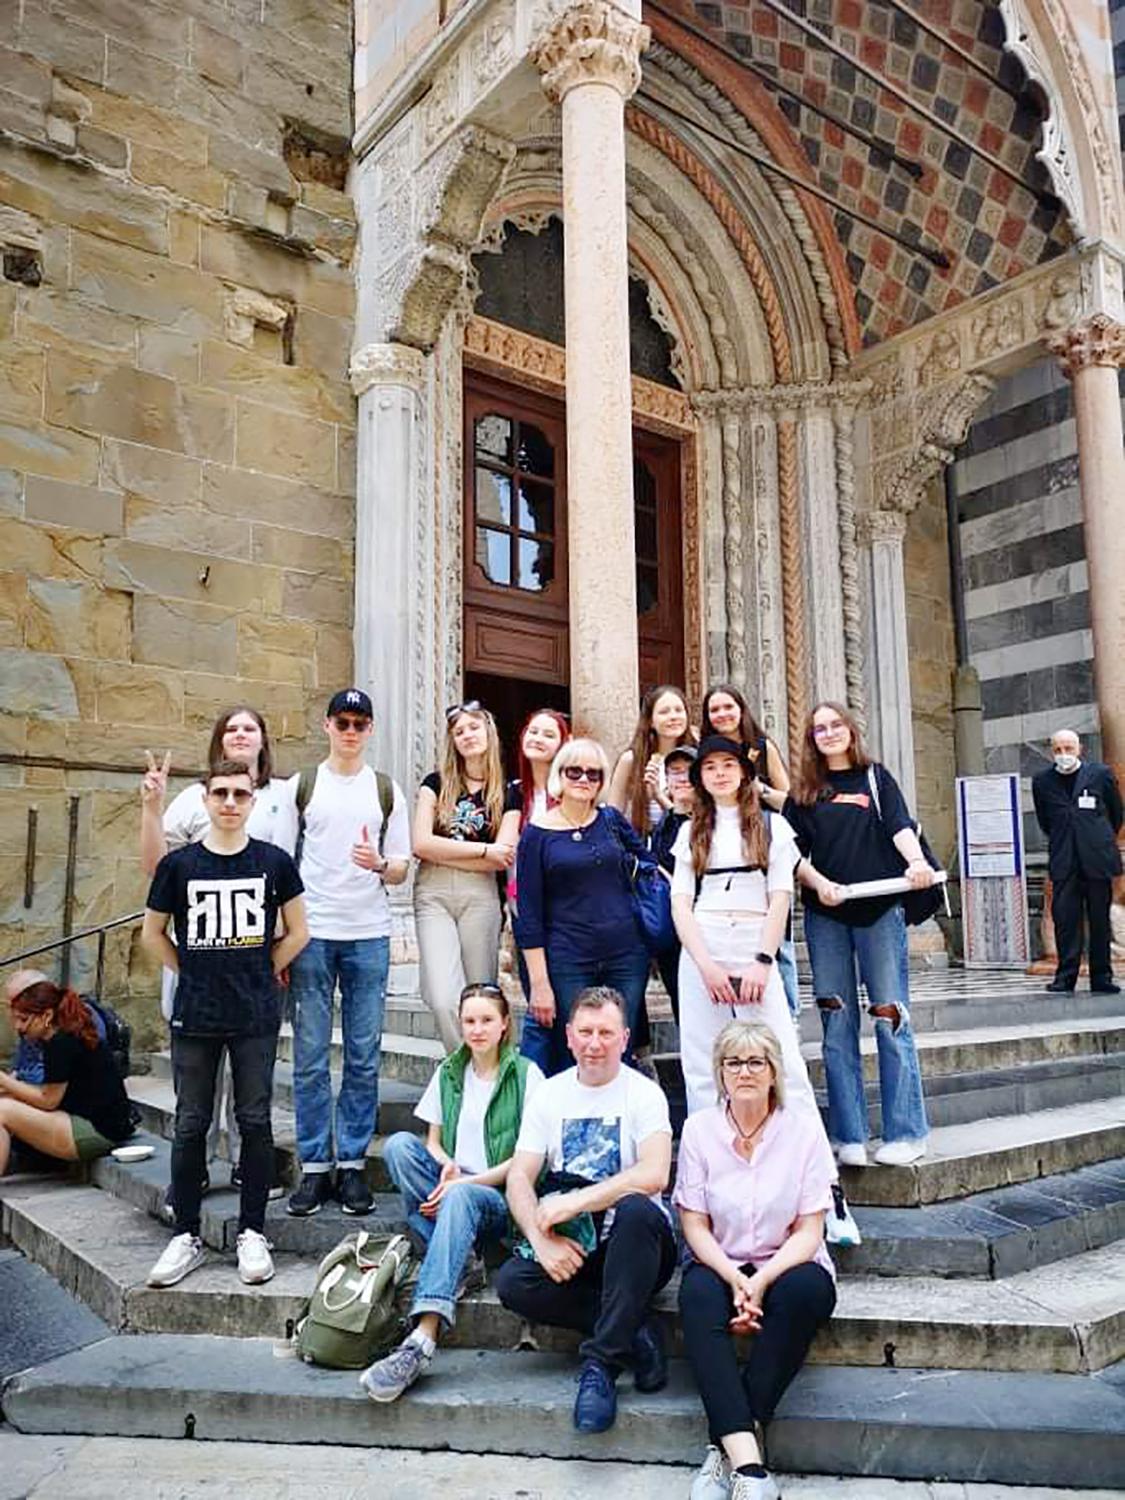 Projekto dalyviai viešėjo Rumunijoje / Projekto dalyviams buvo surengtos pažintinės ekskursijos.